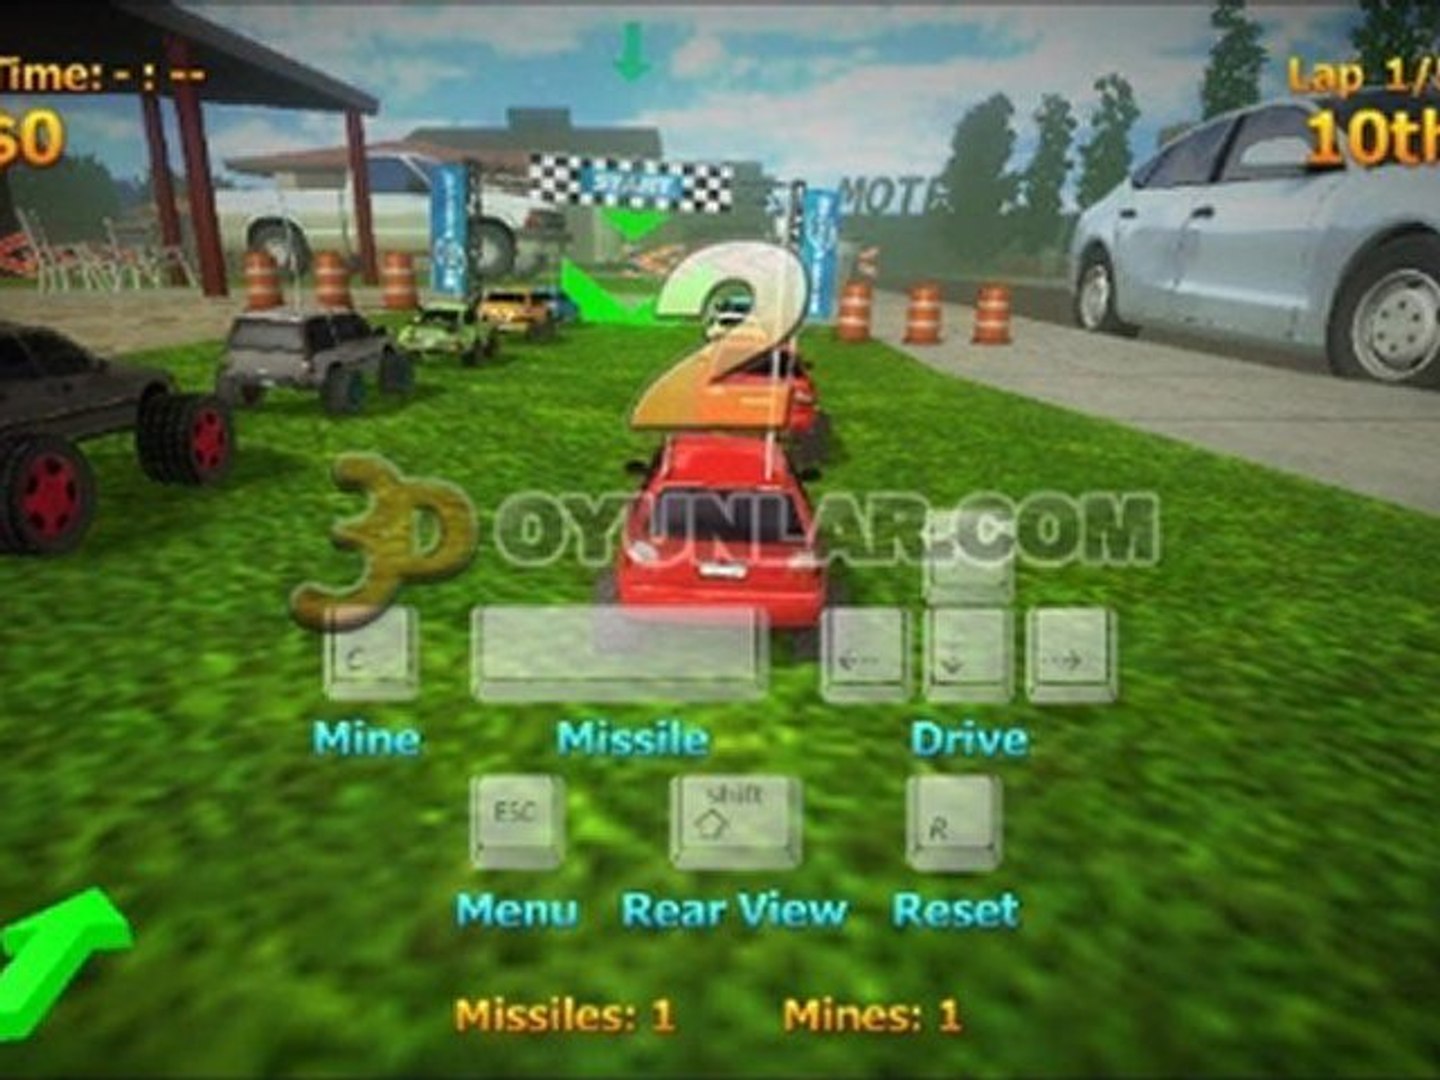 3doyunlar.com - oyuncak araba savaşı oyunu - Dailymotion Video